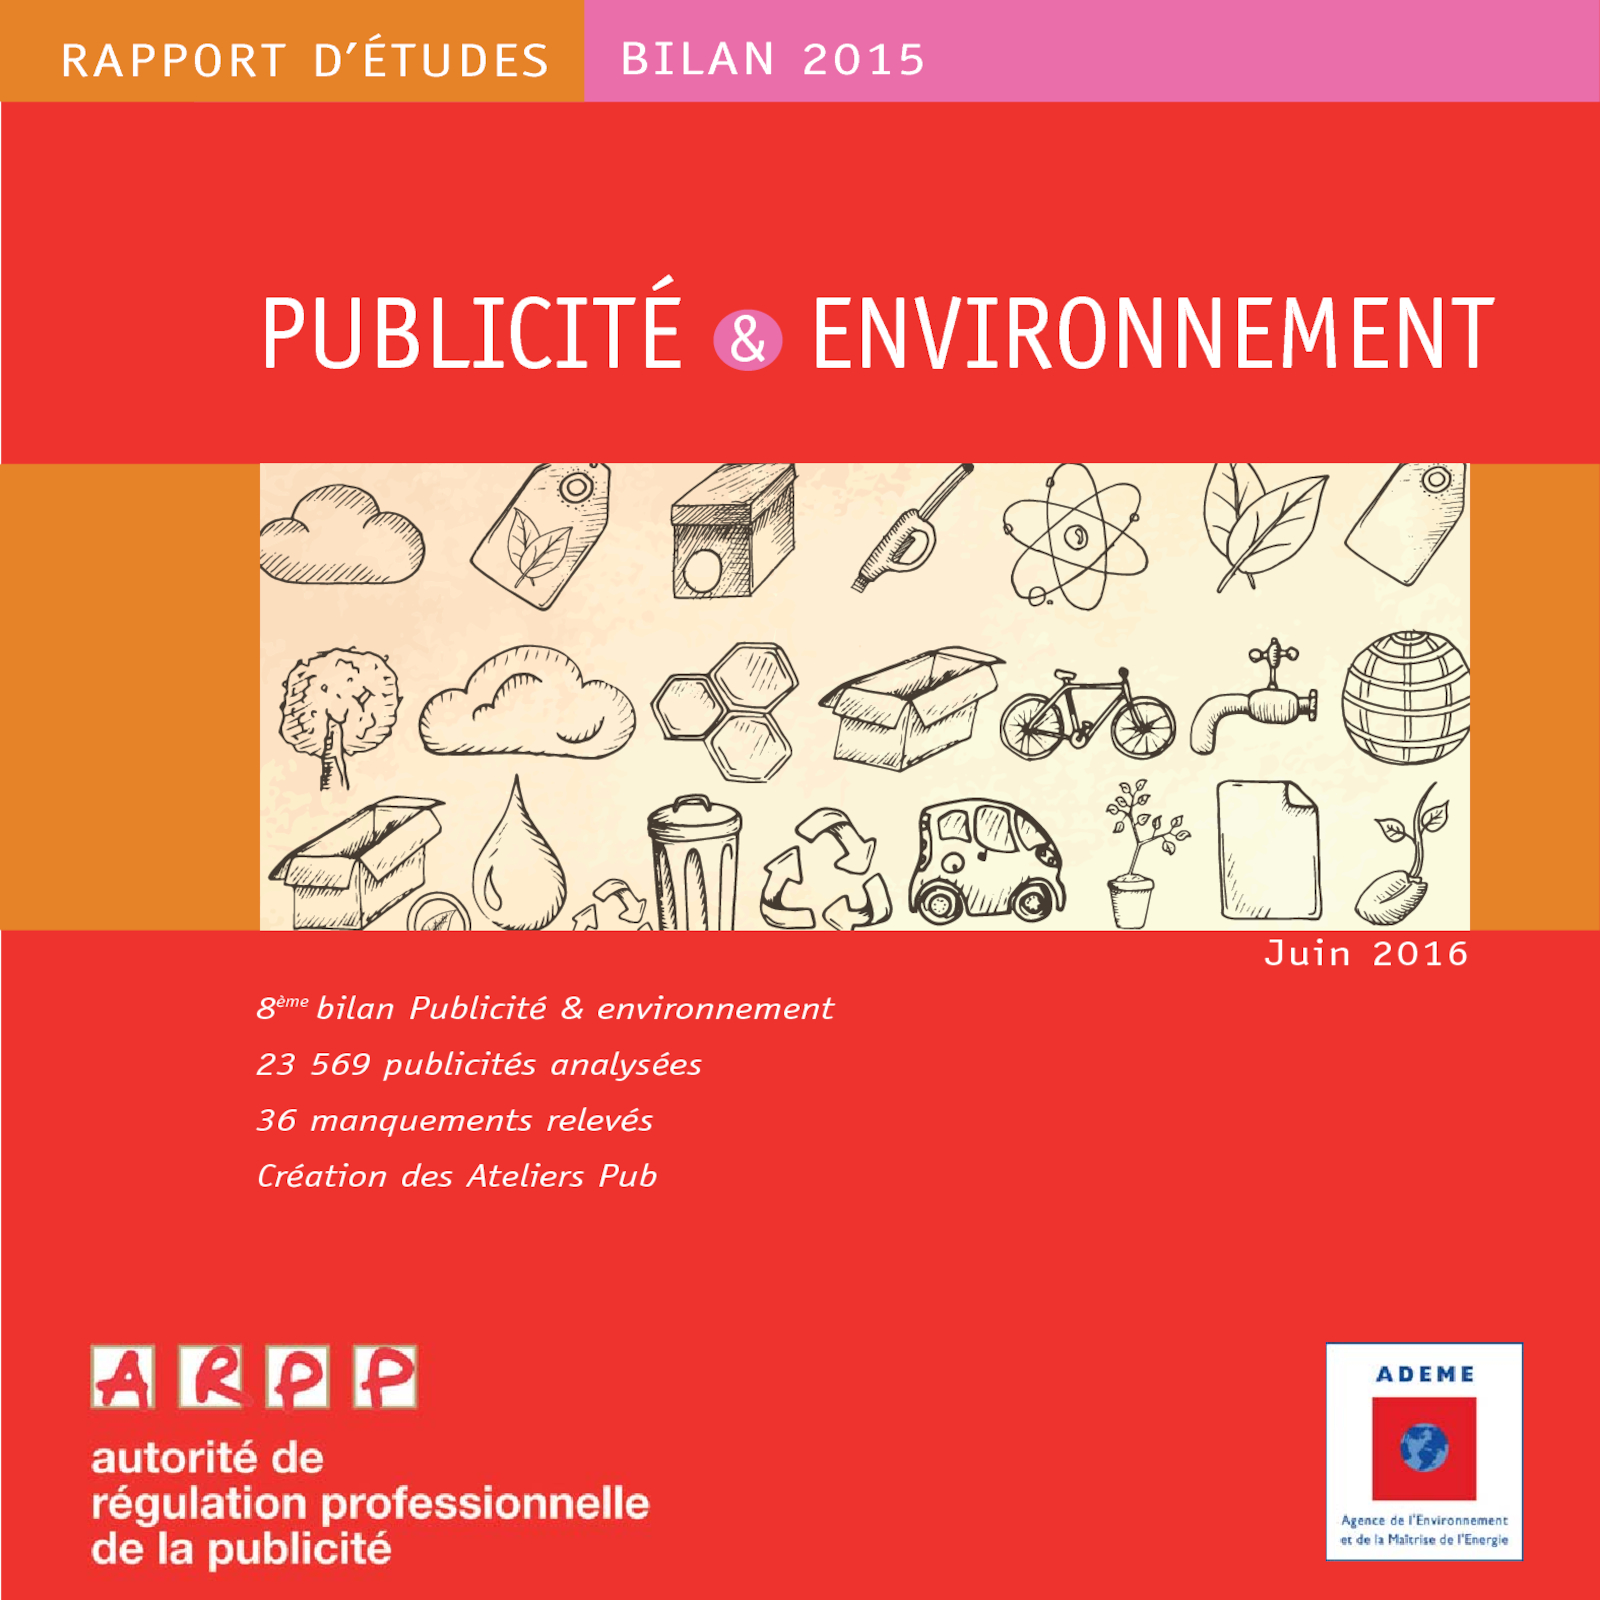 Bilan ARPP/ADEME 2015 "Publicité & Environnement"